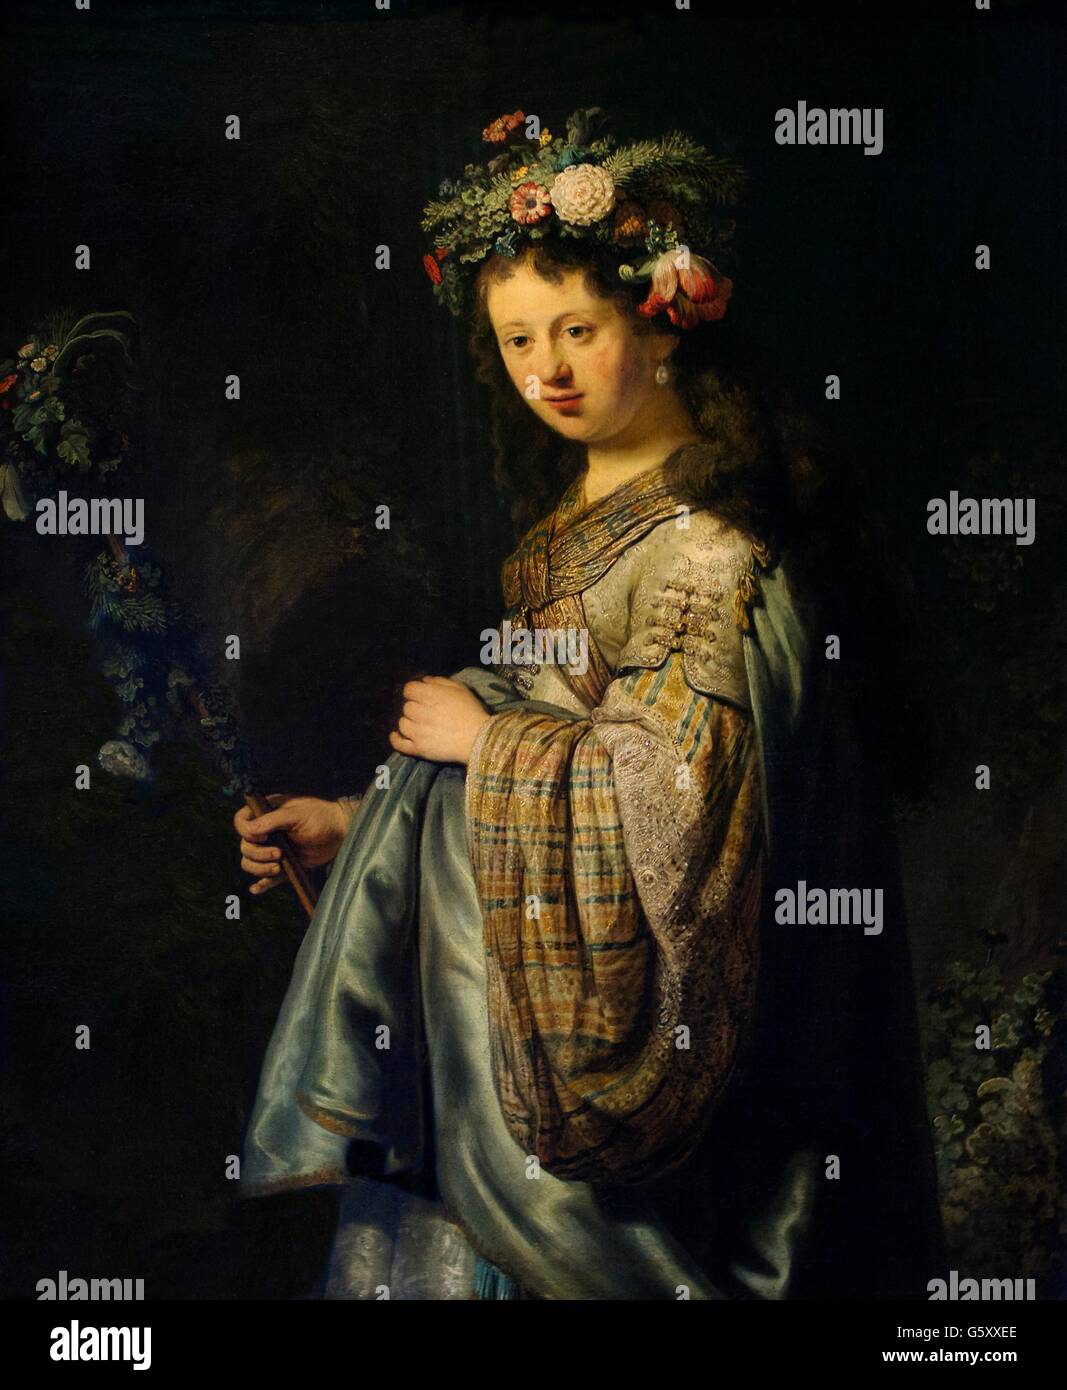 La flore, Rembrandt, 1634, Musée d'état de l'Ermitage, Saint-Pétersbourg, Russie Banque D'Images